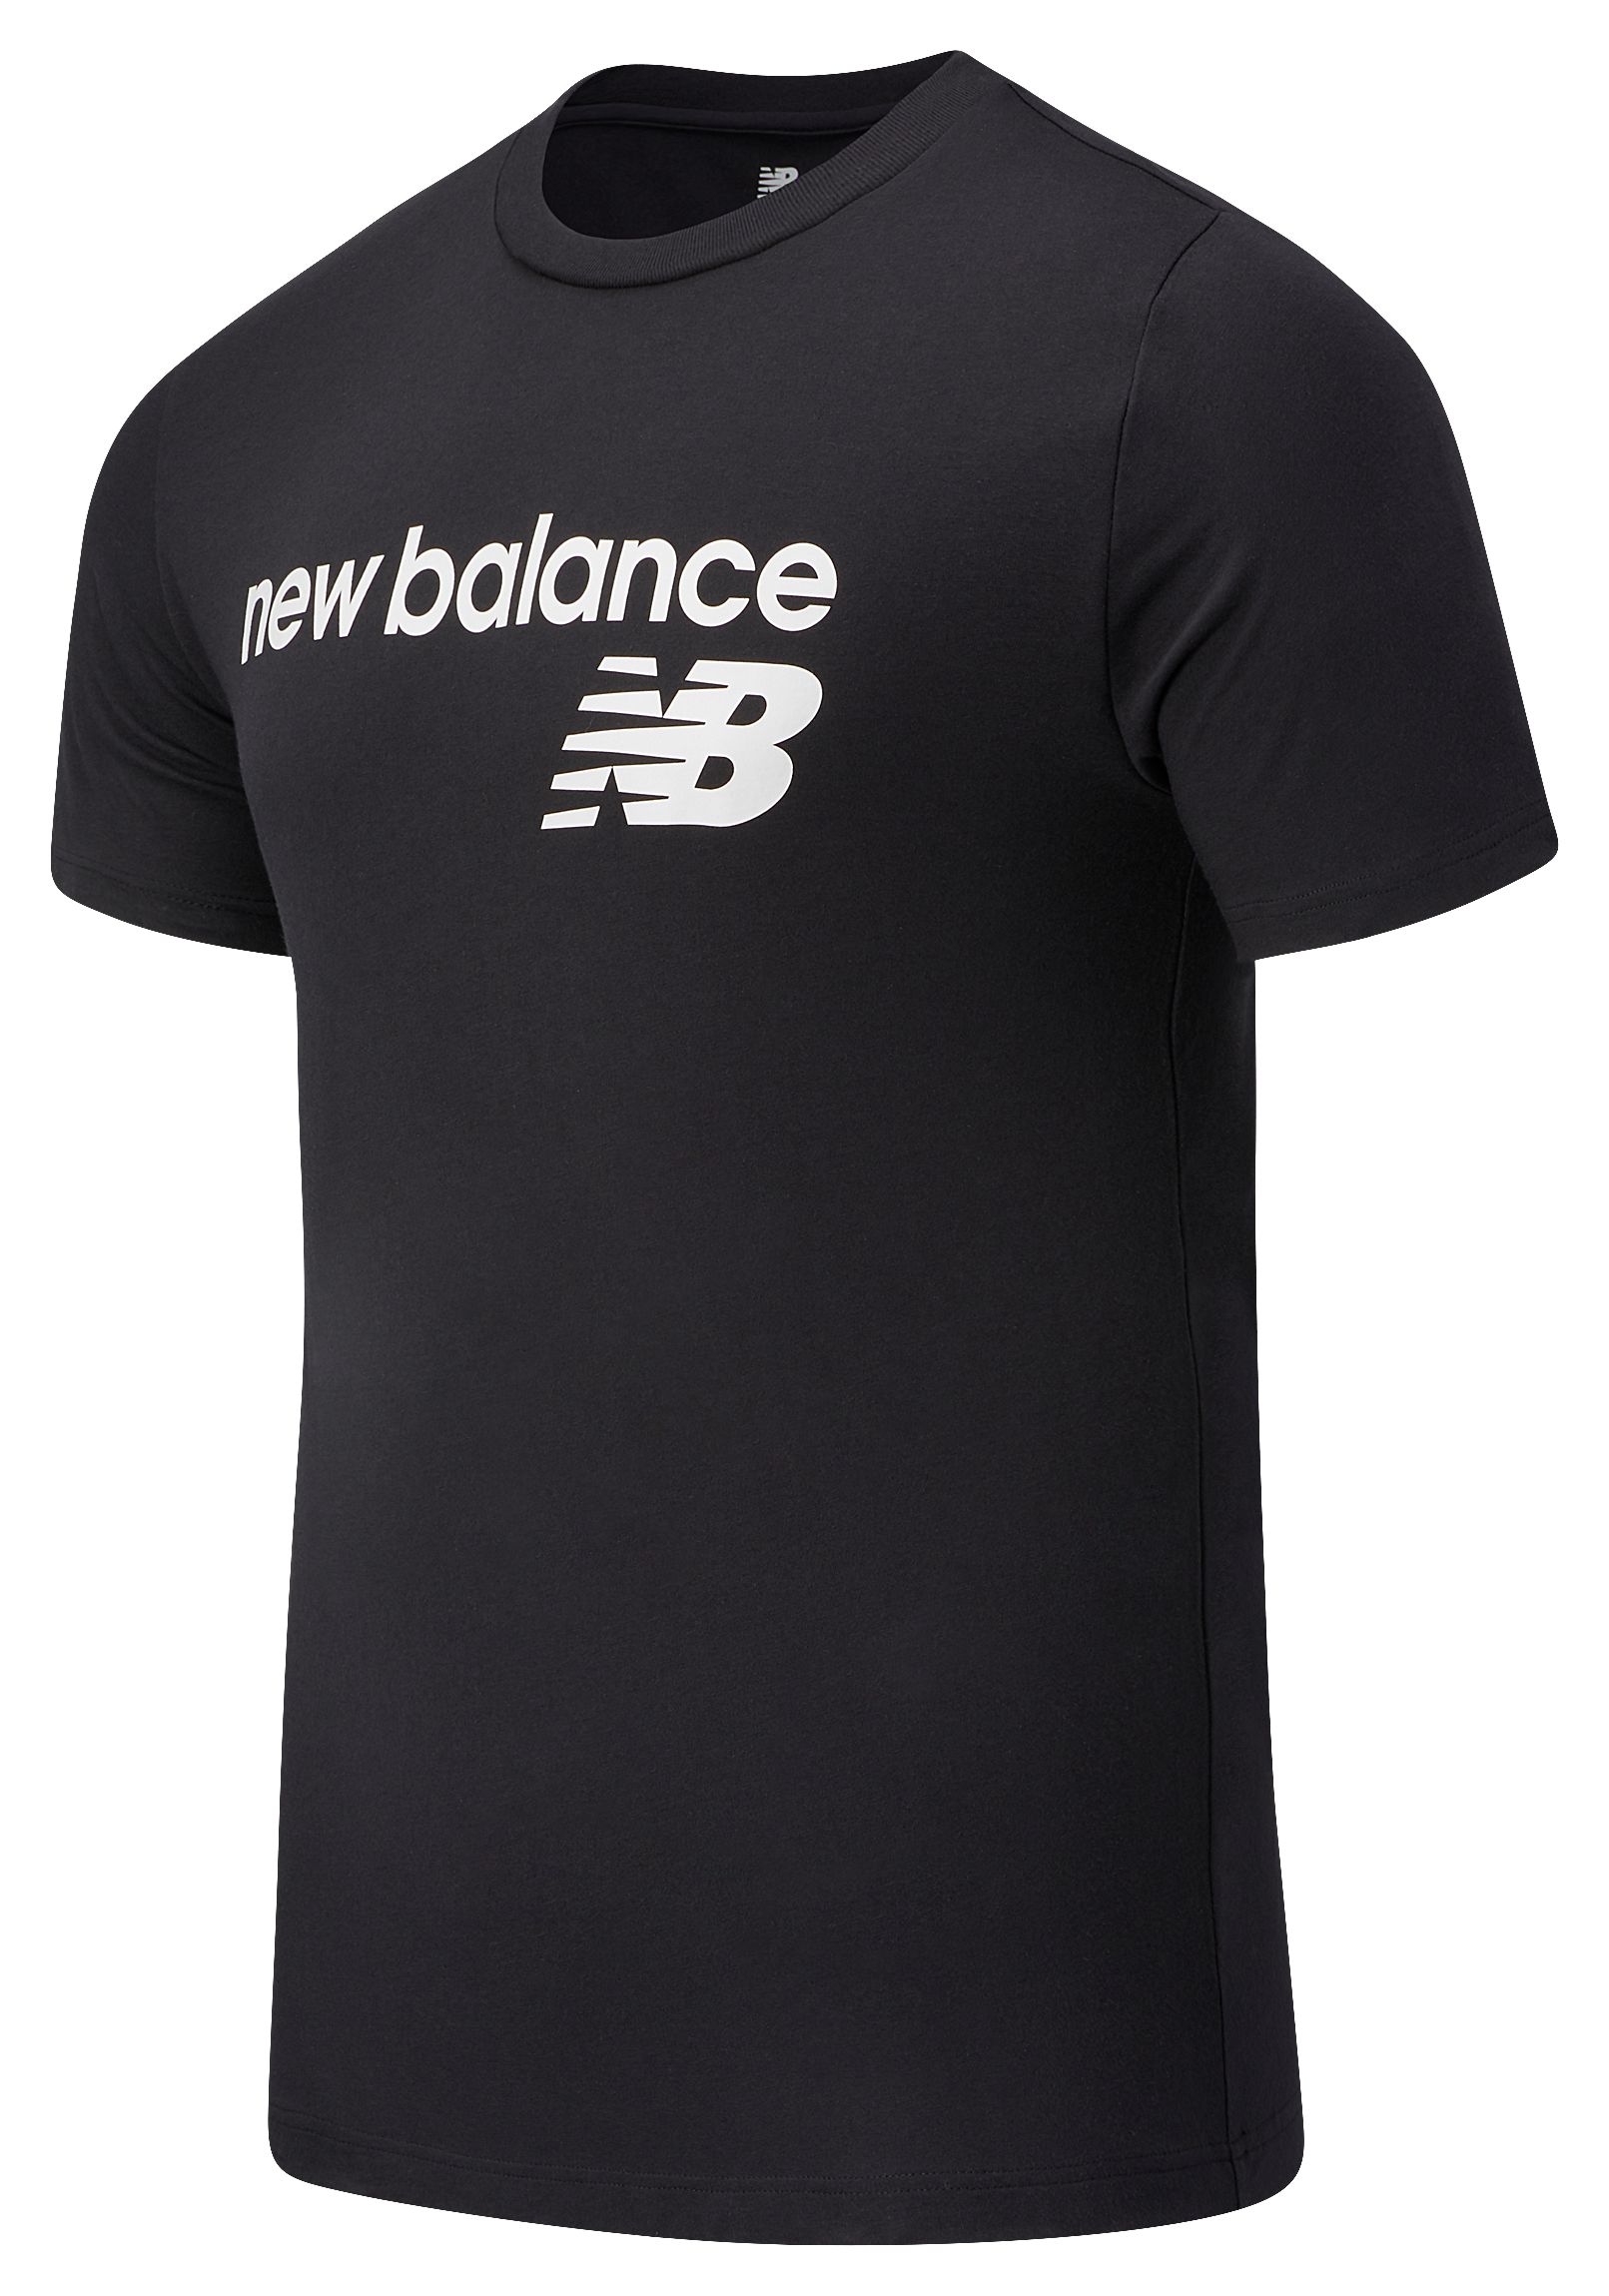 

New Balance Men's NB Classic Core Logo T-Shirt Black - Black